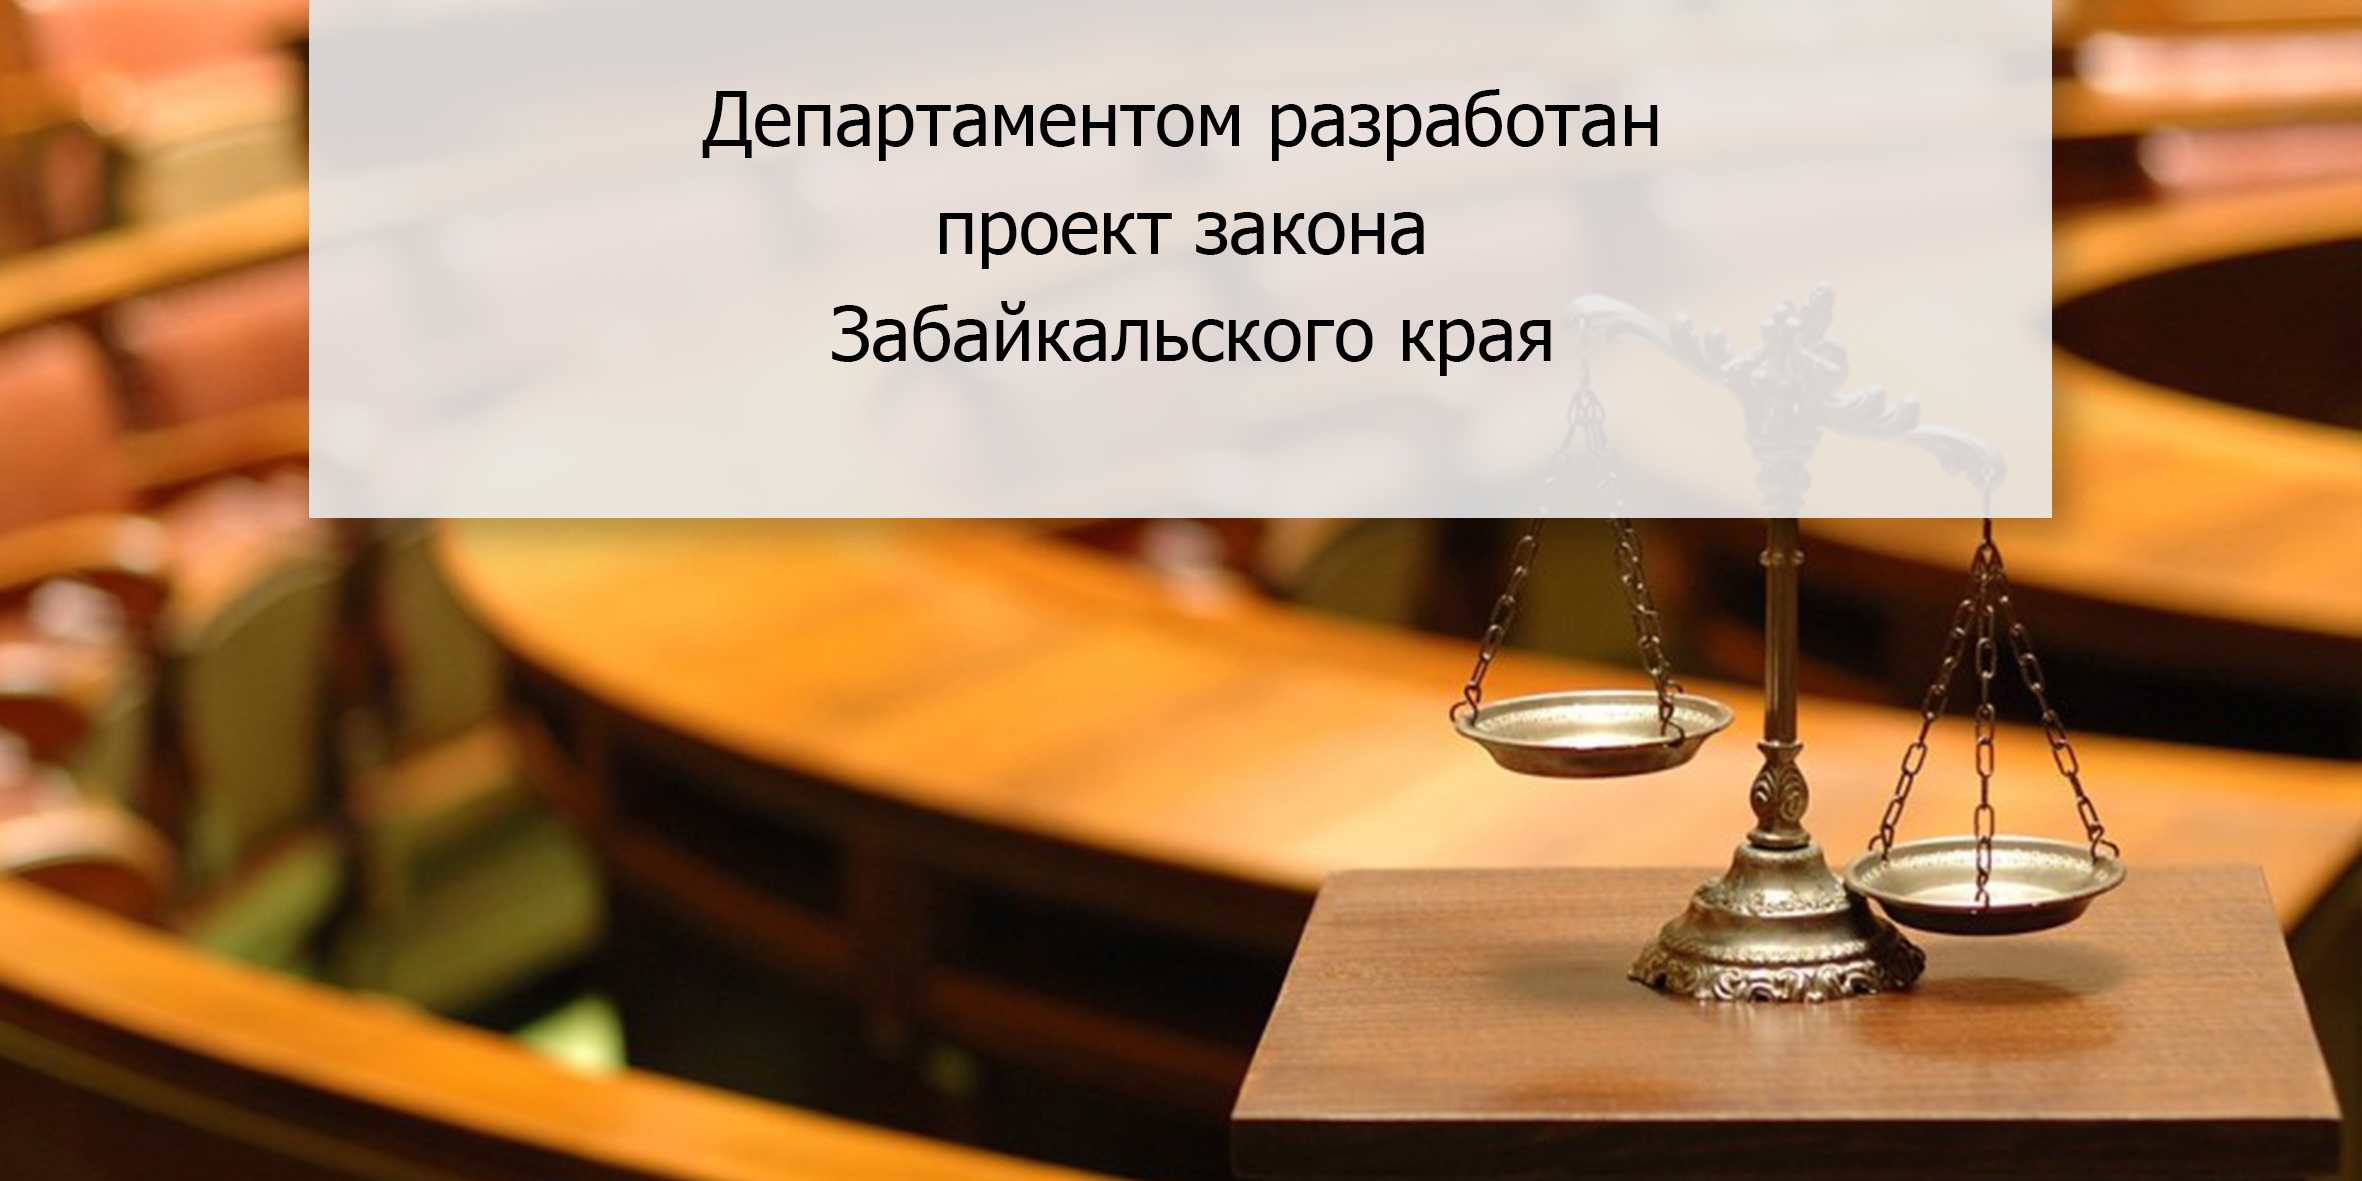 Департаментом разработан проект закона Забайкальского края